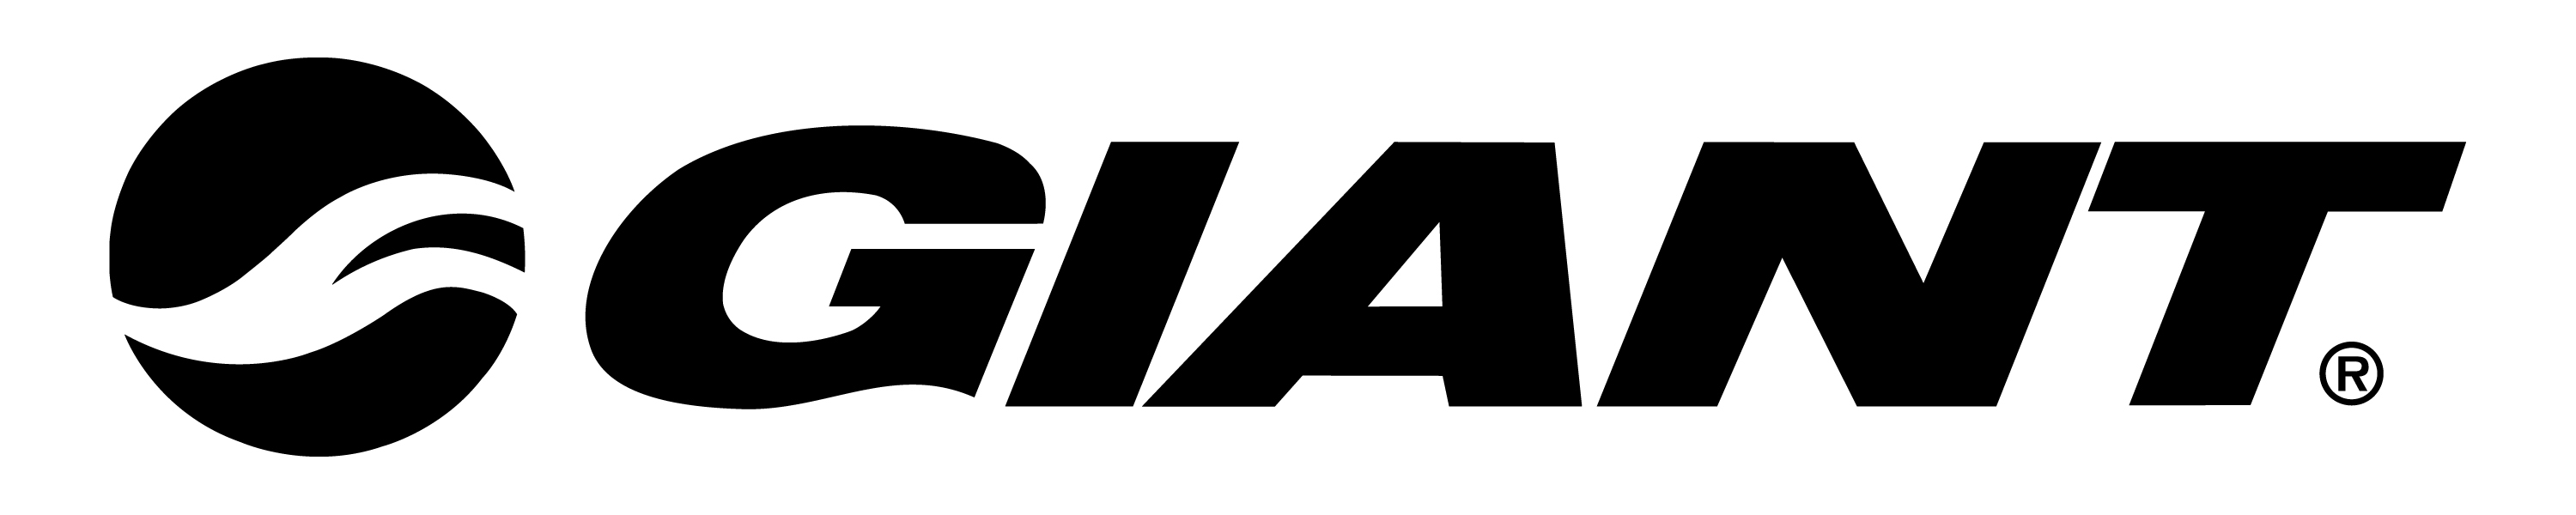 GIANT bike logo